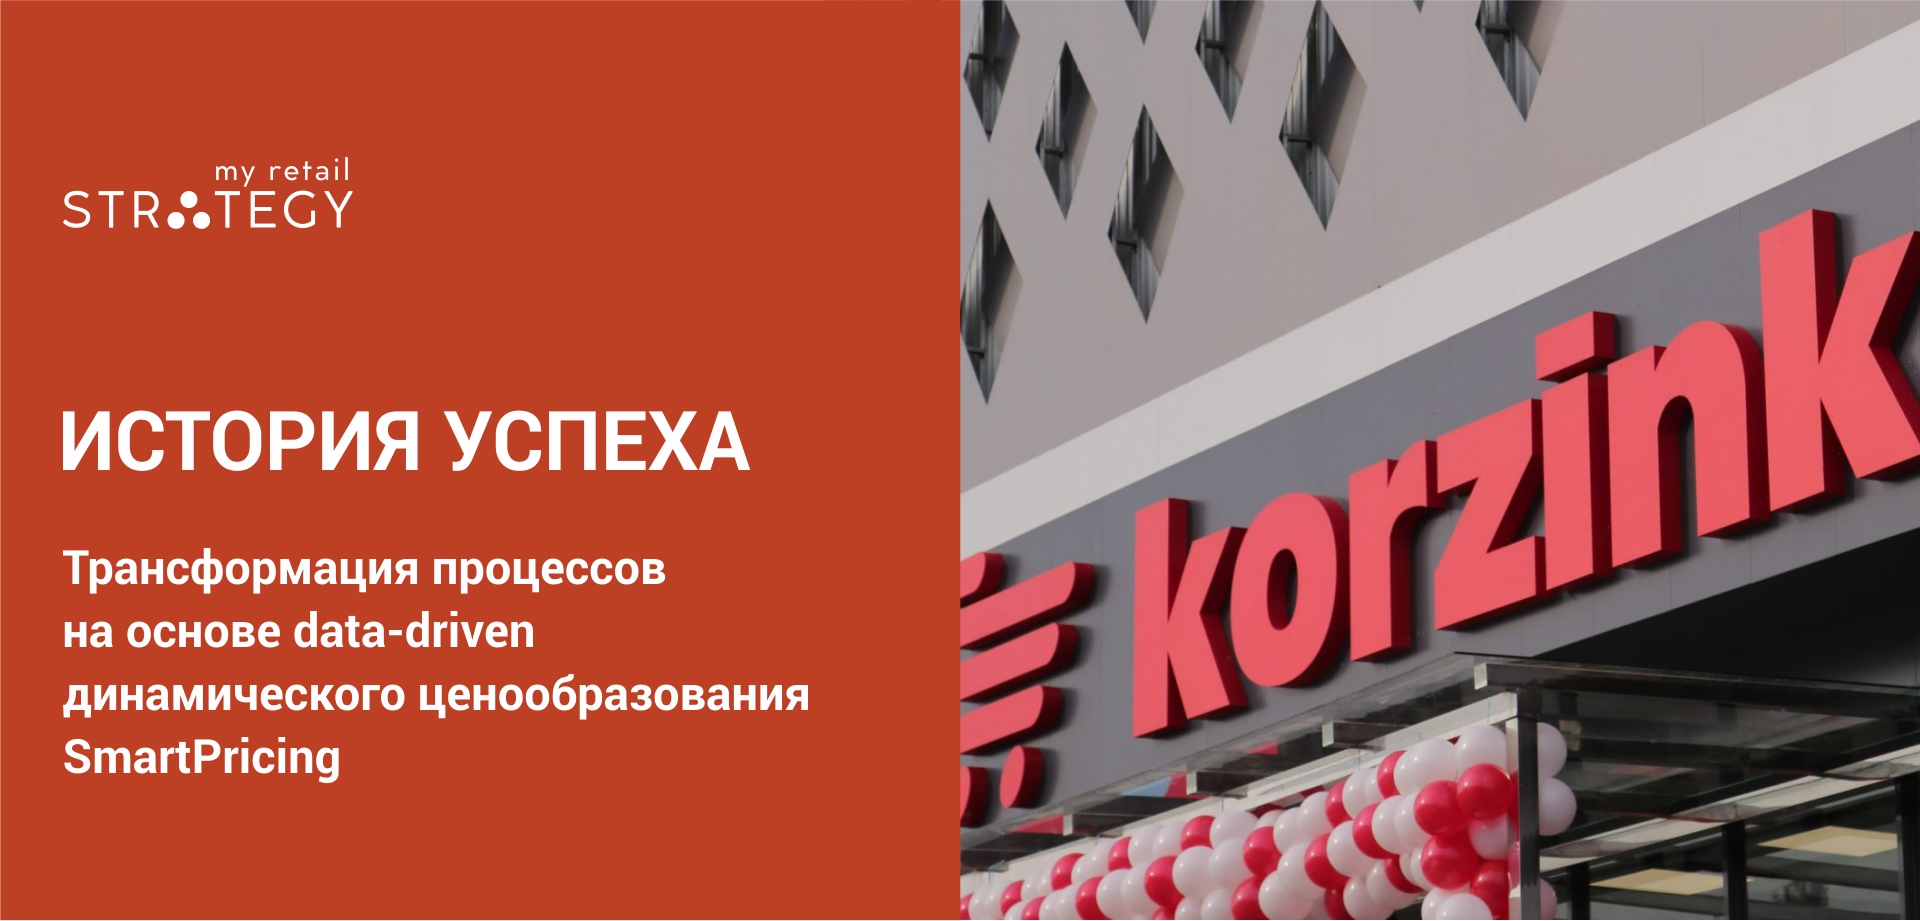 Кейс сети супермаркетов Korzinka — Трансформация процессов на основе data-driven динамического ценообразования SmartPricing